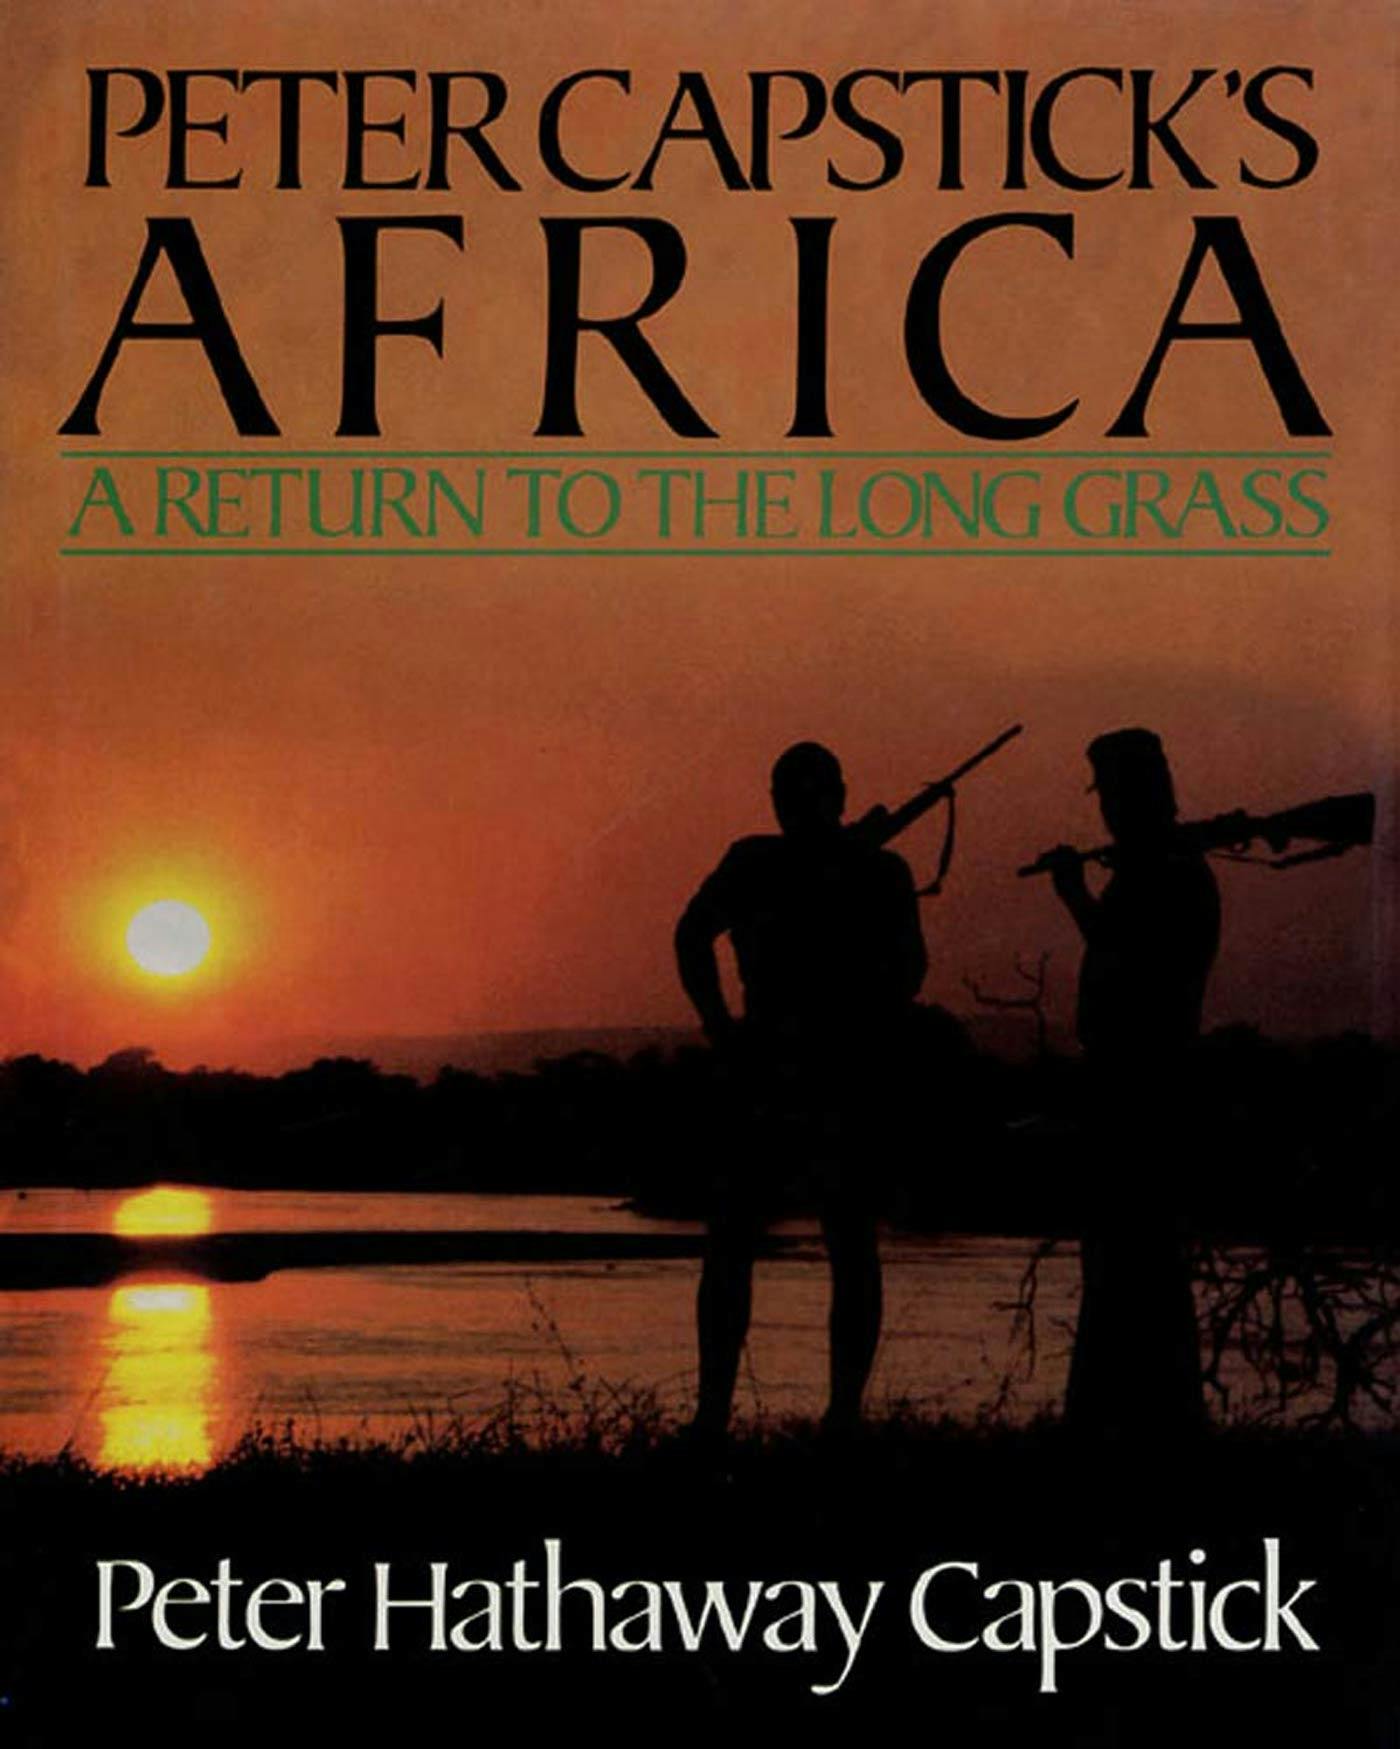 Peter Capsticks Africa picture